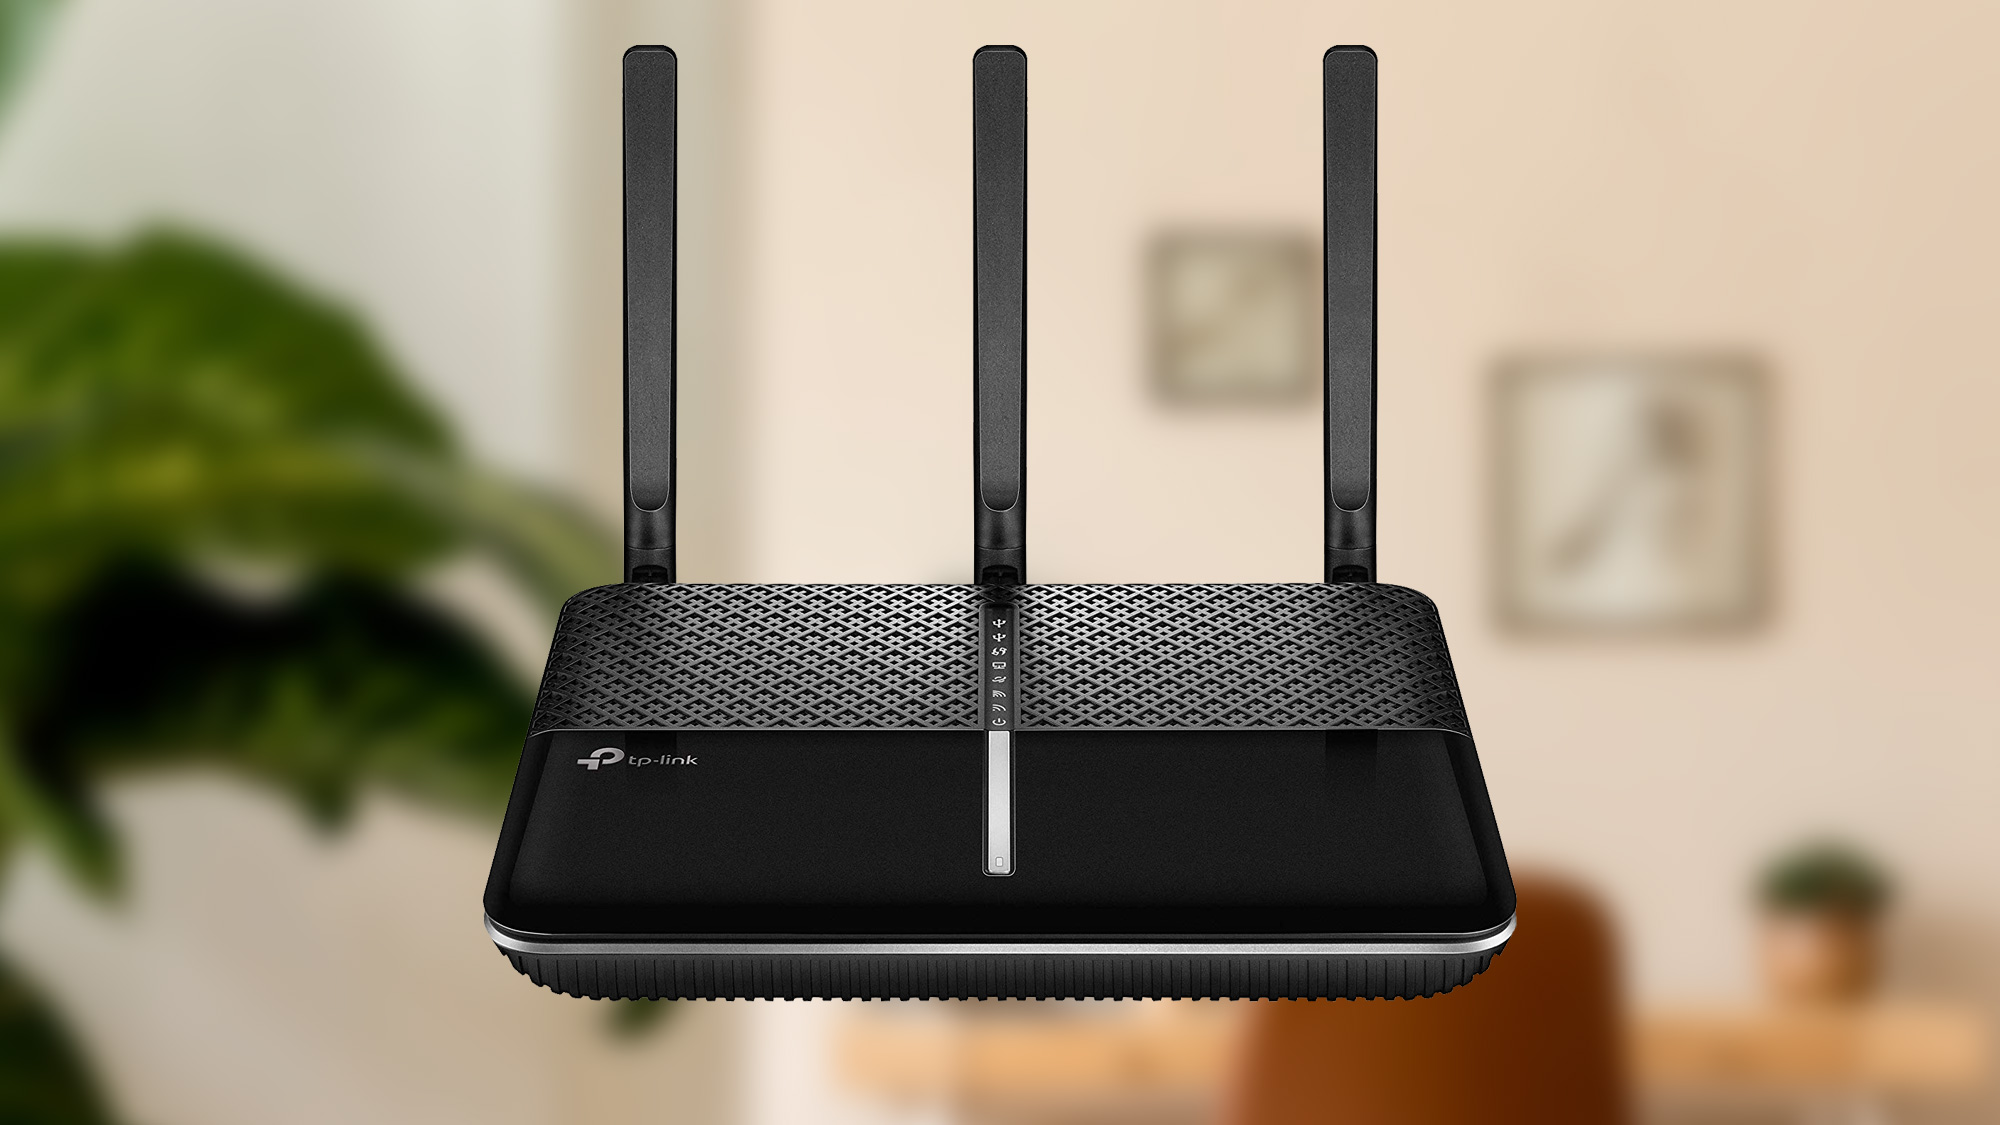 Best Wi-Fi routers: TP-Link Archer C2300